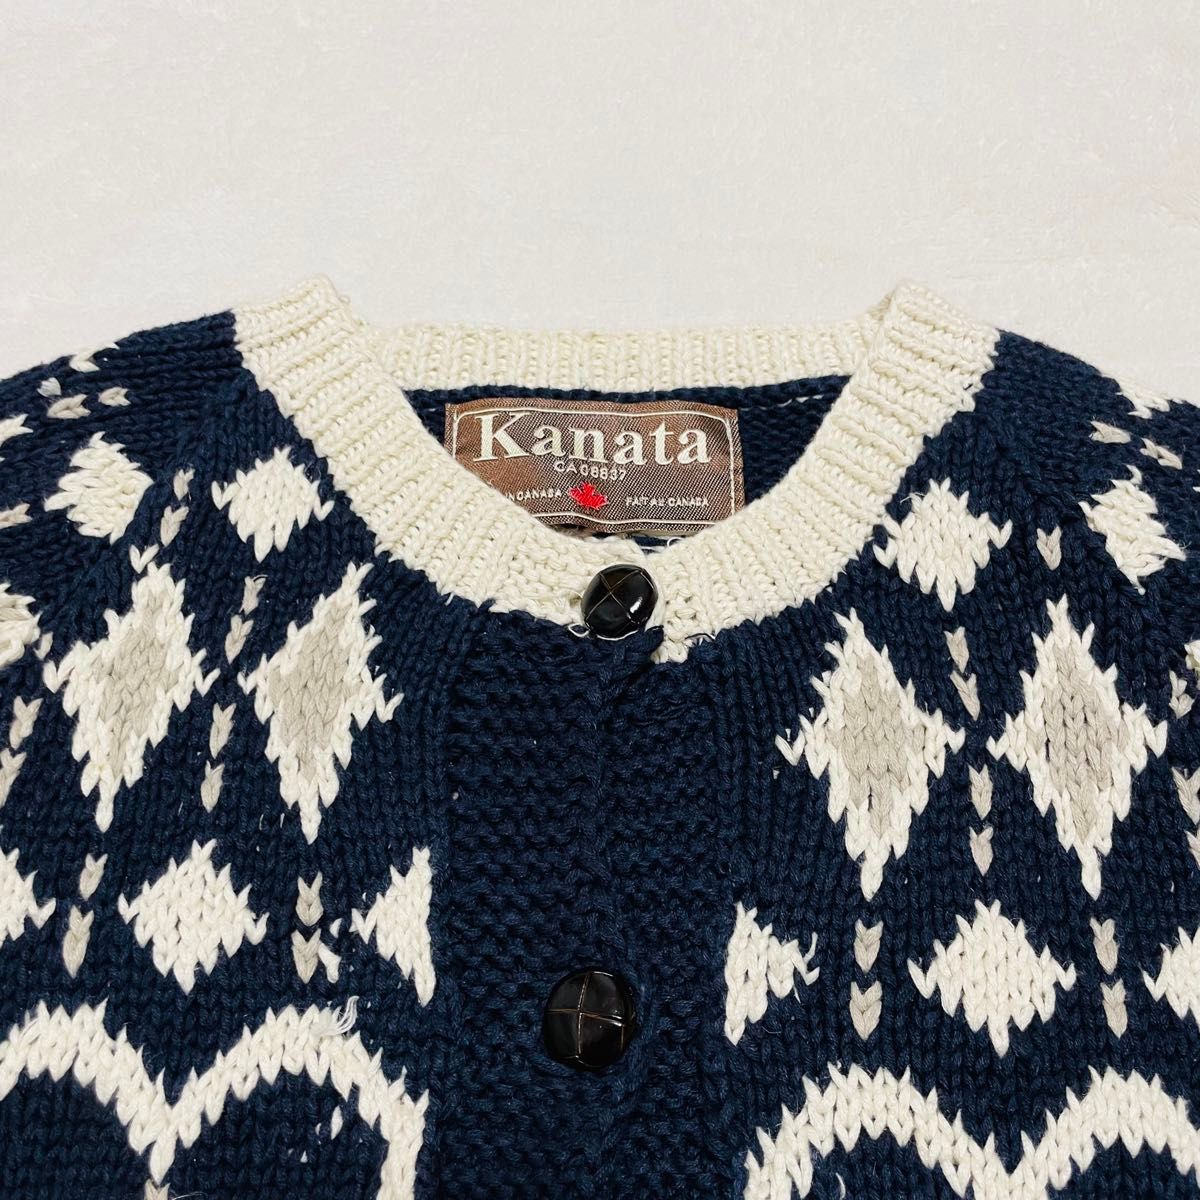 送料無料★Kanata カナタ カウチンニット カーディガン カナダ製 ノルディック柄 レディース ニット セーター 